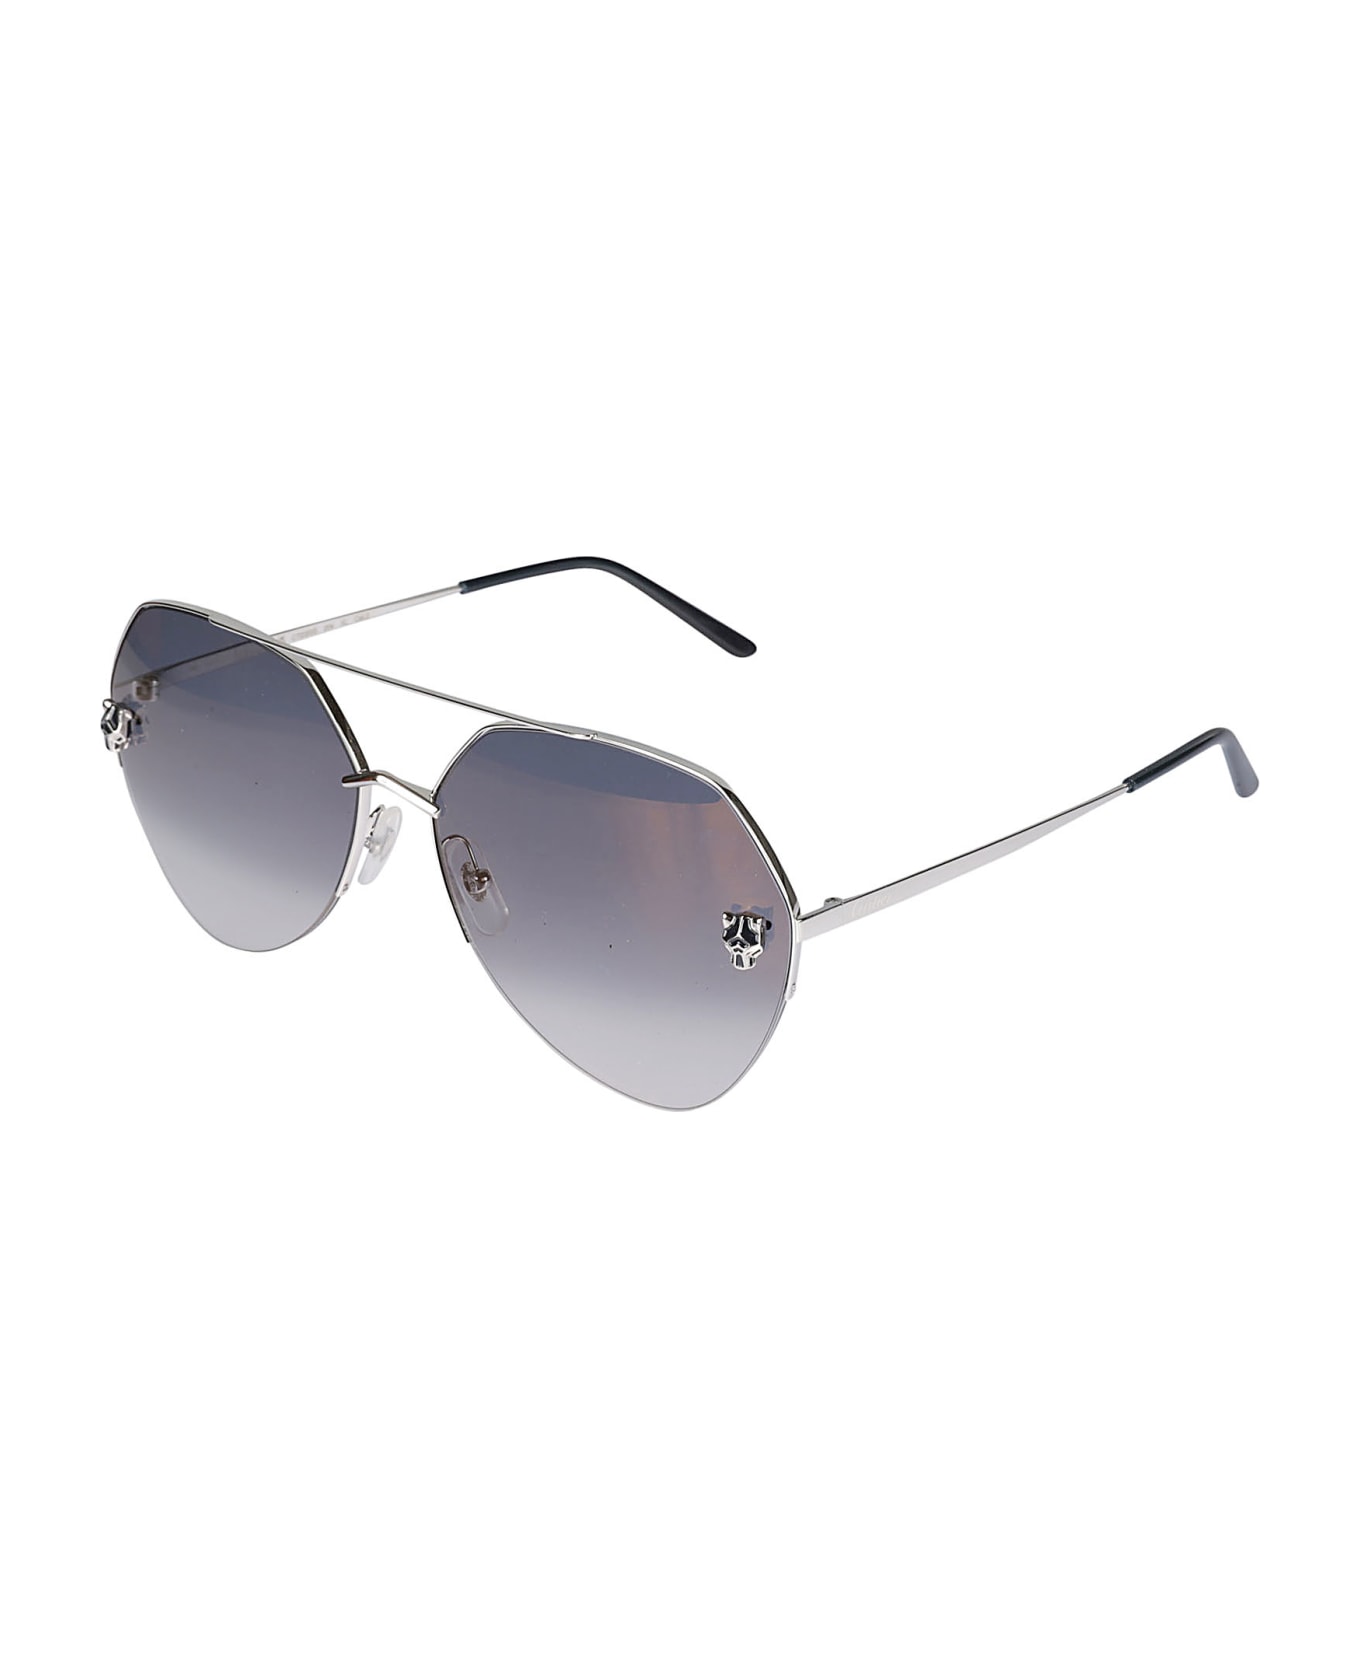 Cartier Eyewear Pantheree De Cartier Sunglasses - 004 silver silver blue サングラス